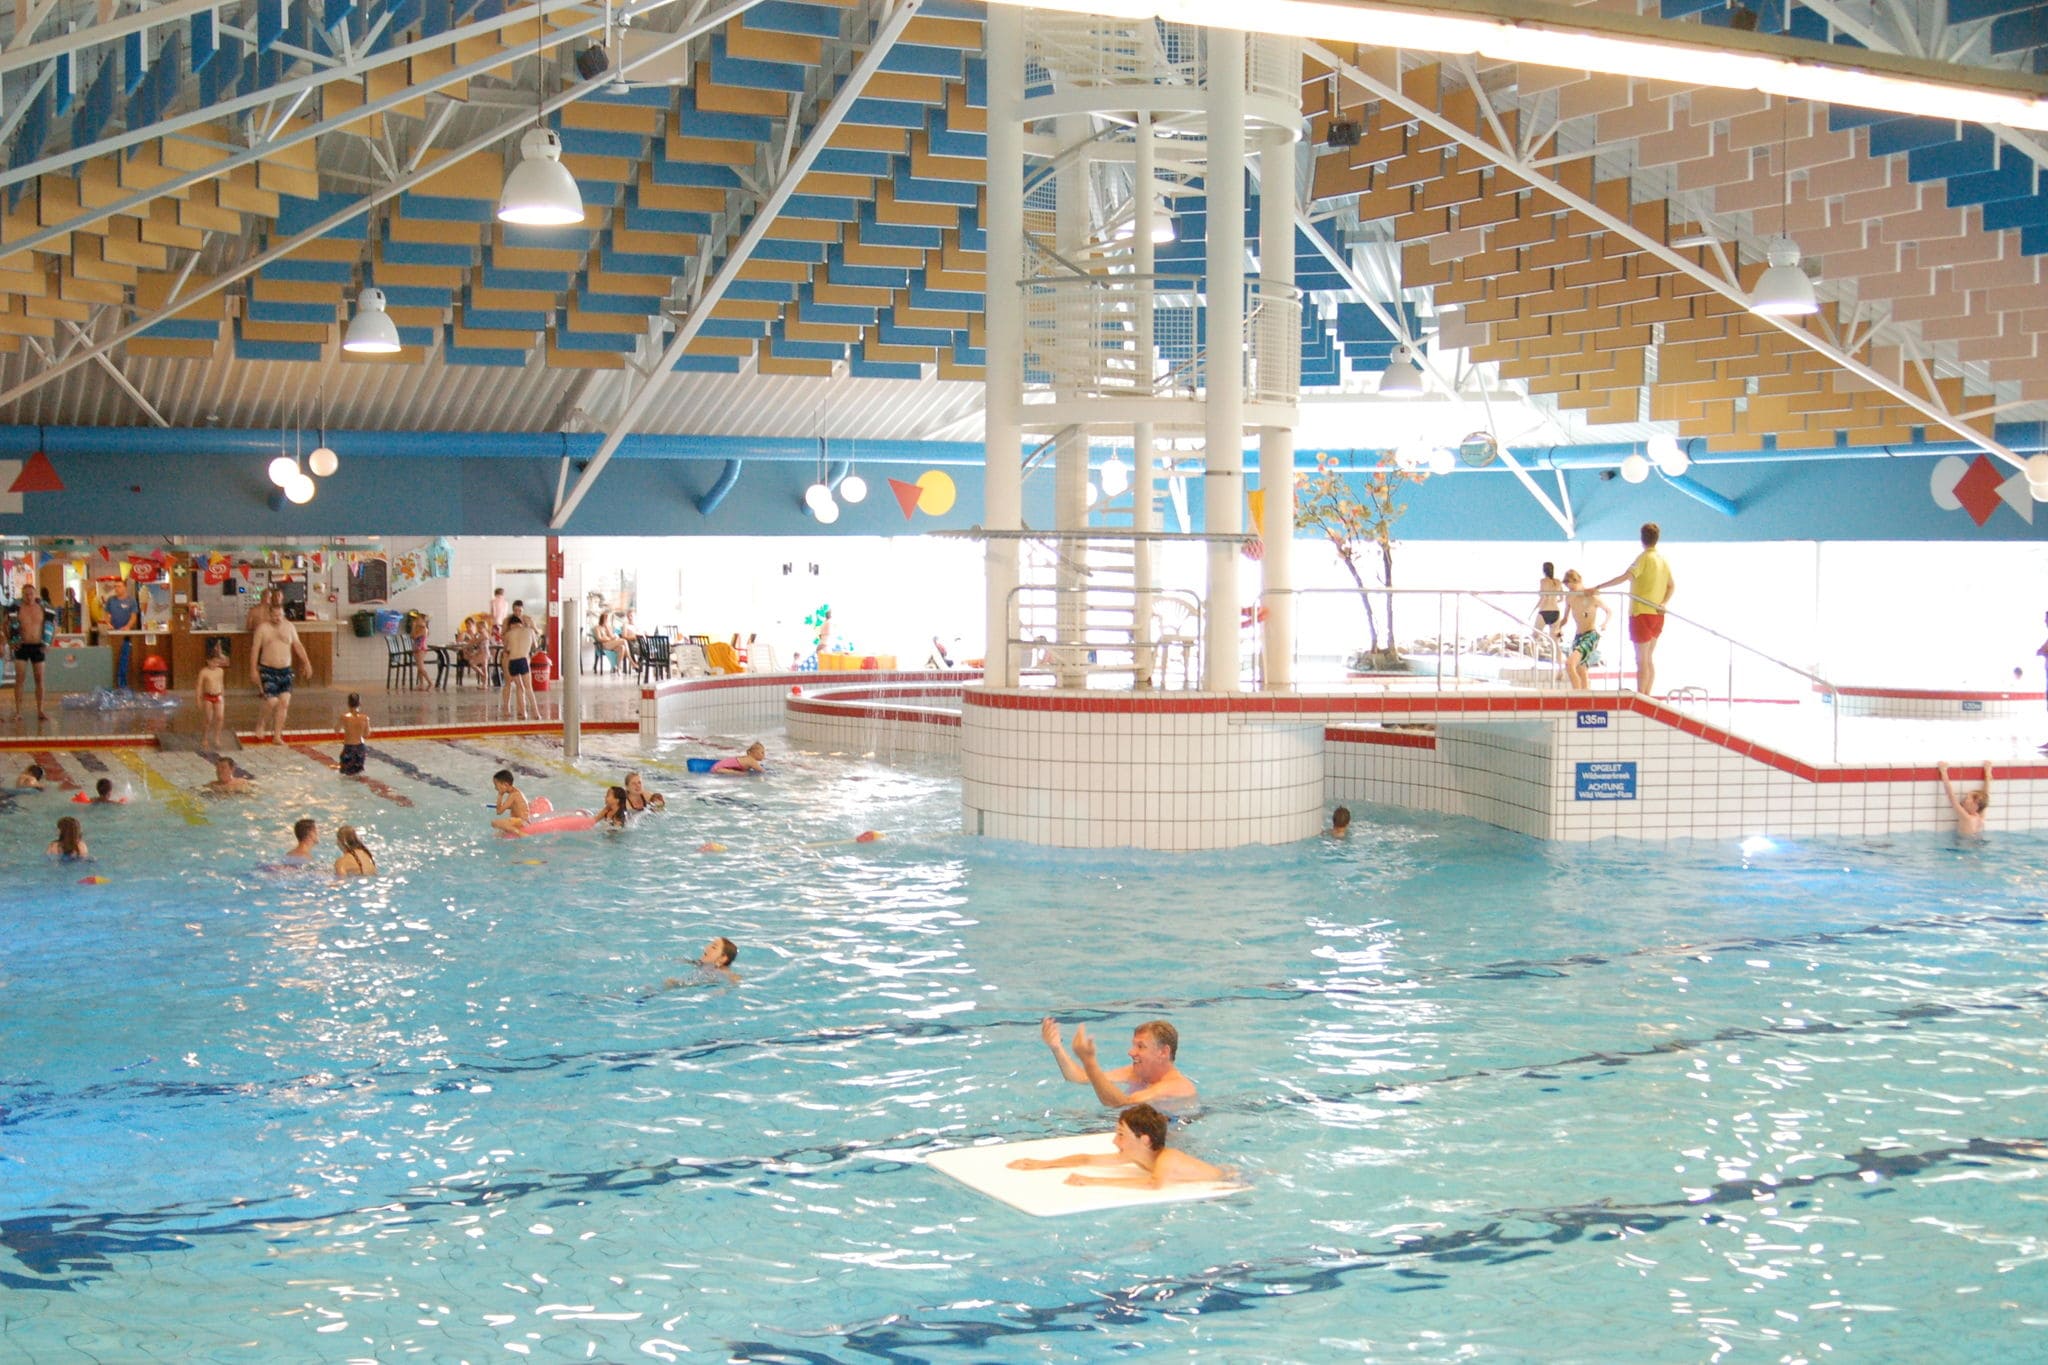 Gerestyld vakantiehuis op vakantiepark op Texel met faciliteiten zoals zwembad